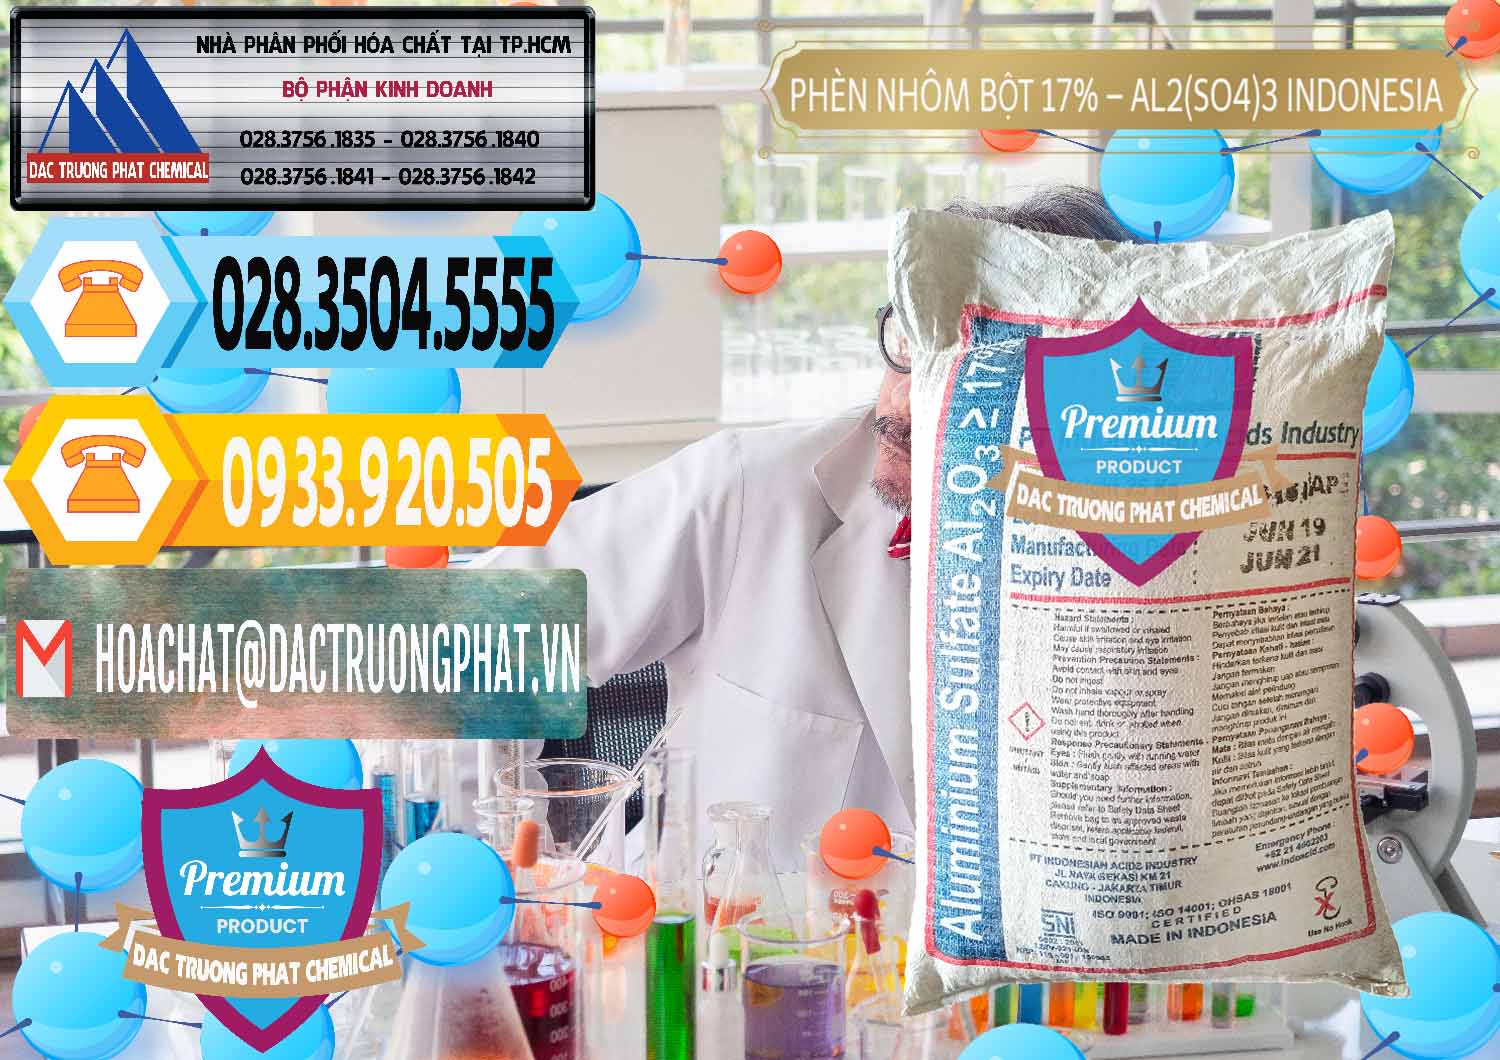 Cty kinh doanh và bán Phèn Nhôm Bột - Al2(SO4)3 17% bao 25kg Indonesia - 0114 - Nơi chuyên cung cấp và bán hóa chất tại TP.HCM - hoachattayrua.net